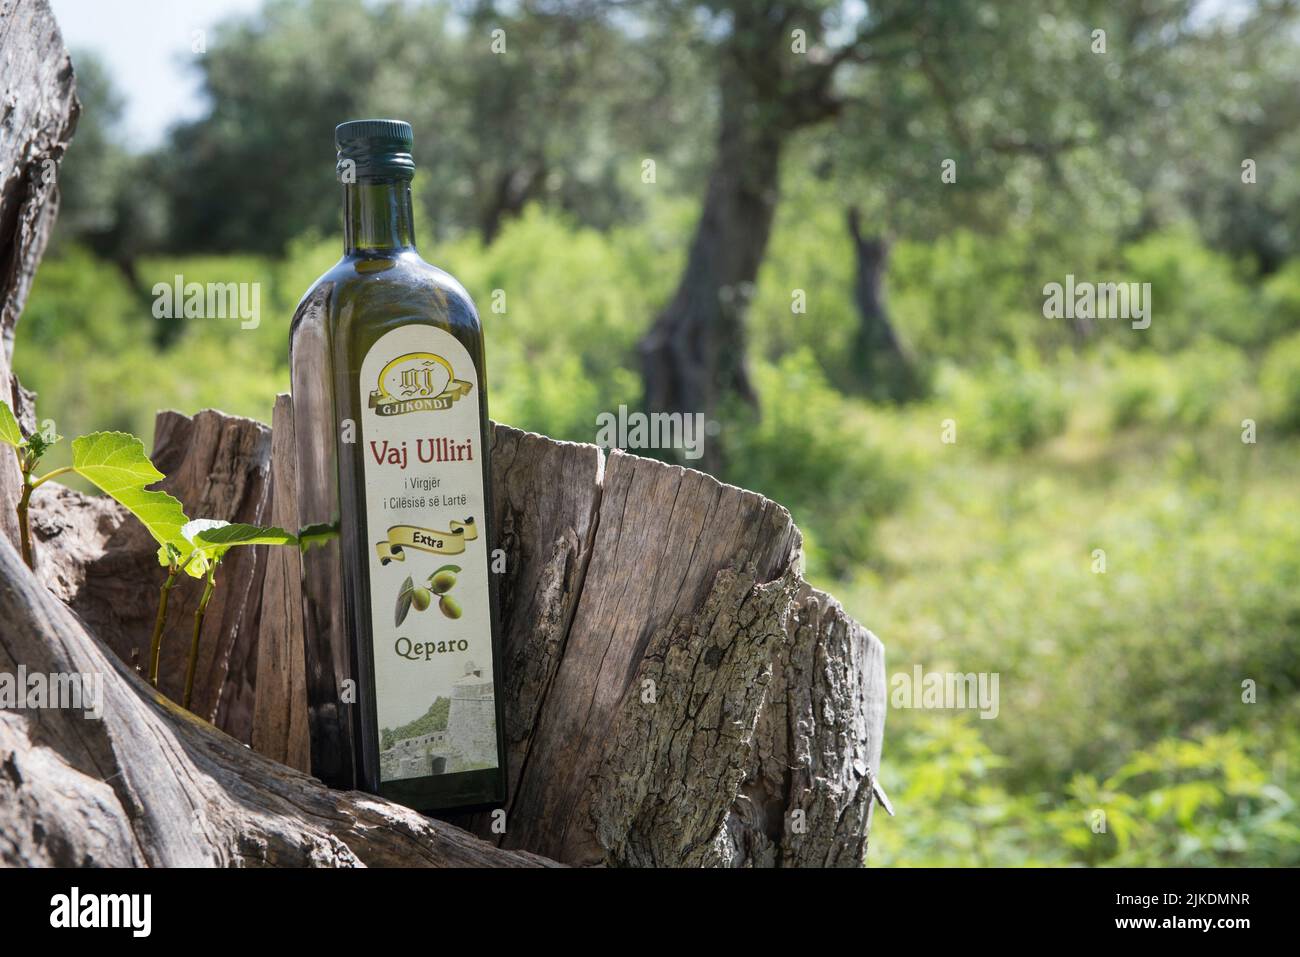 Bouteille d'huile d'olive de la famille Gjikondi, producteur d'huile d'olive à Qeparo, côte Ionienne, Albanie, Europe du Sud-est. Banque D'Images